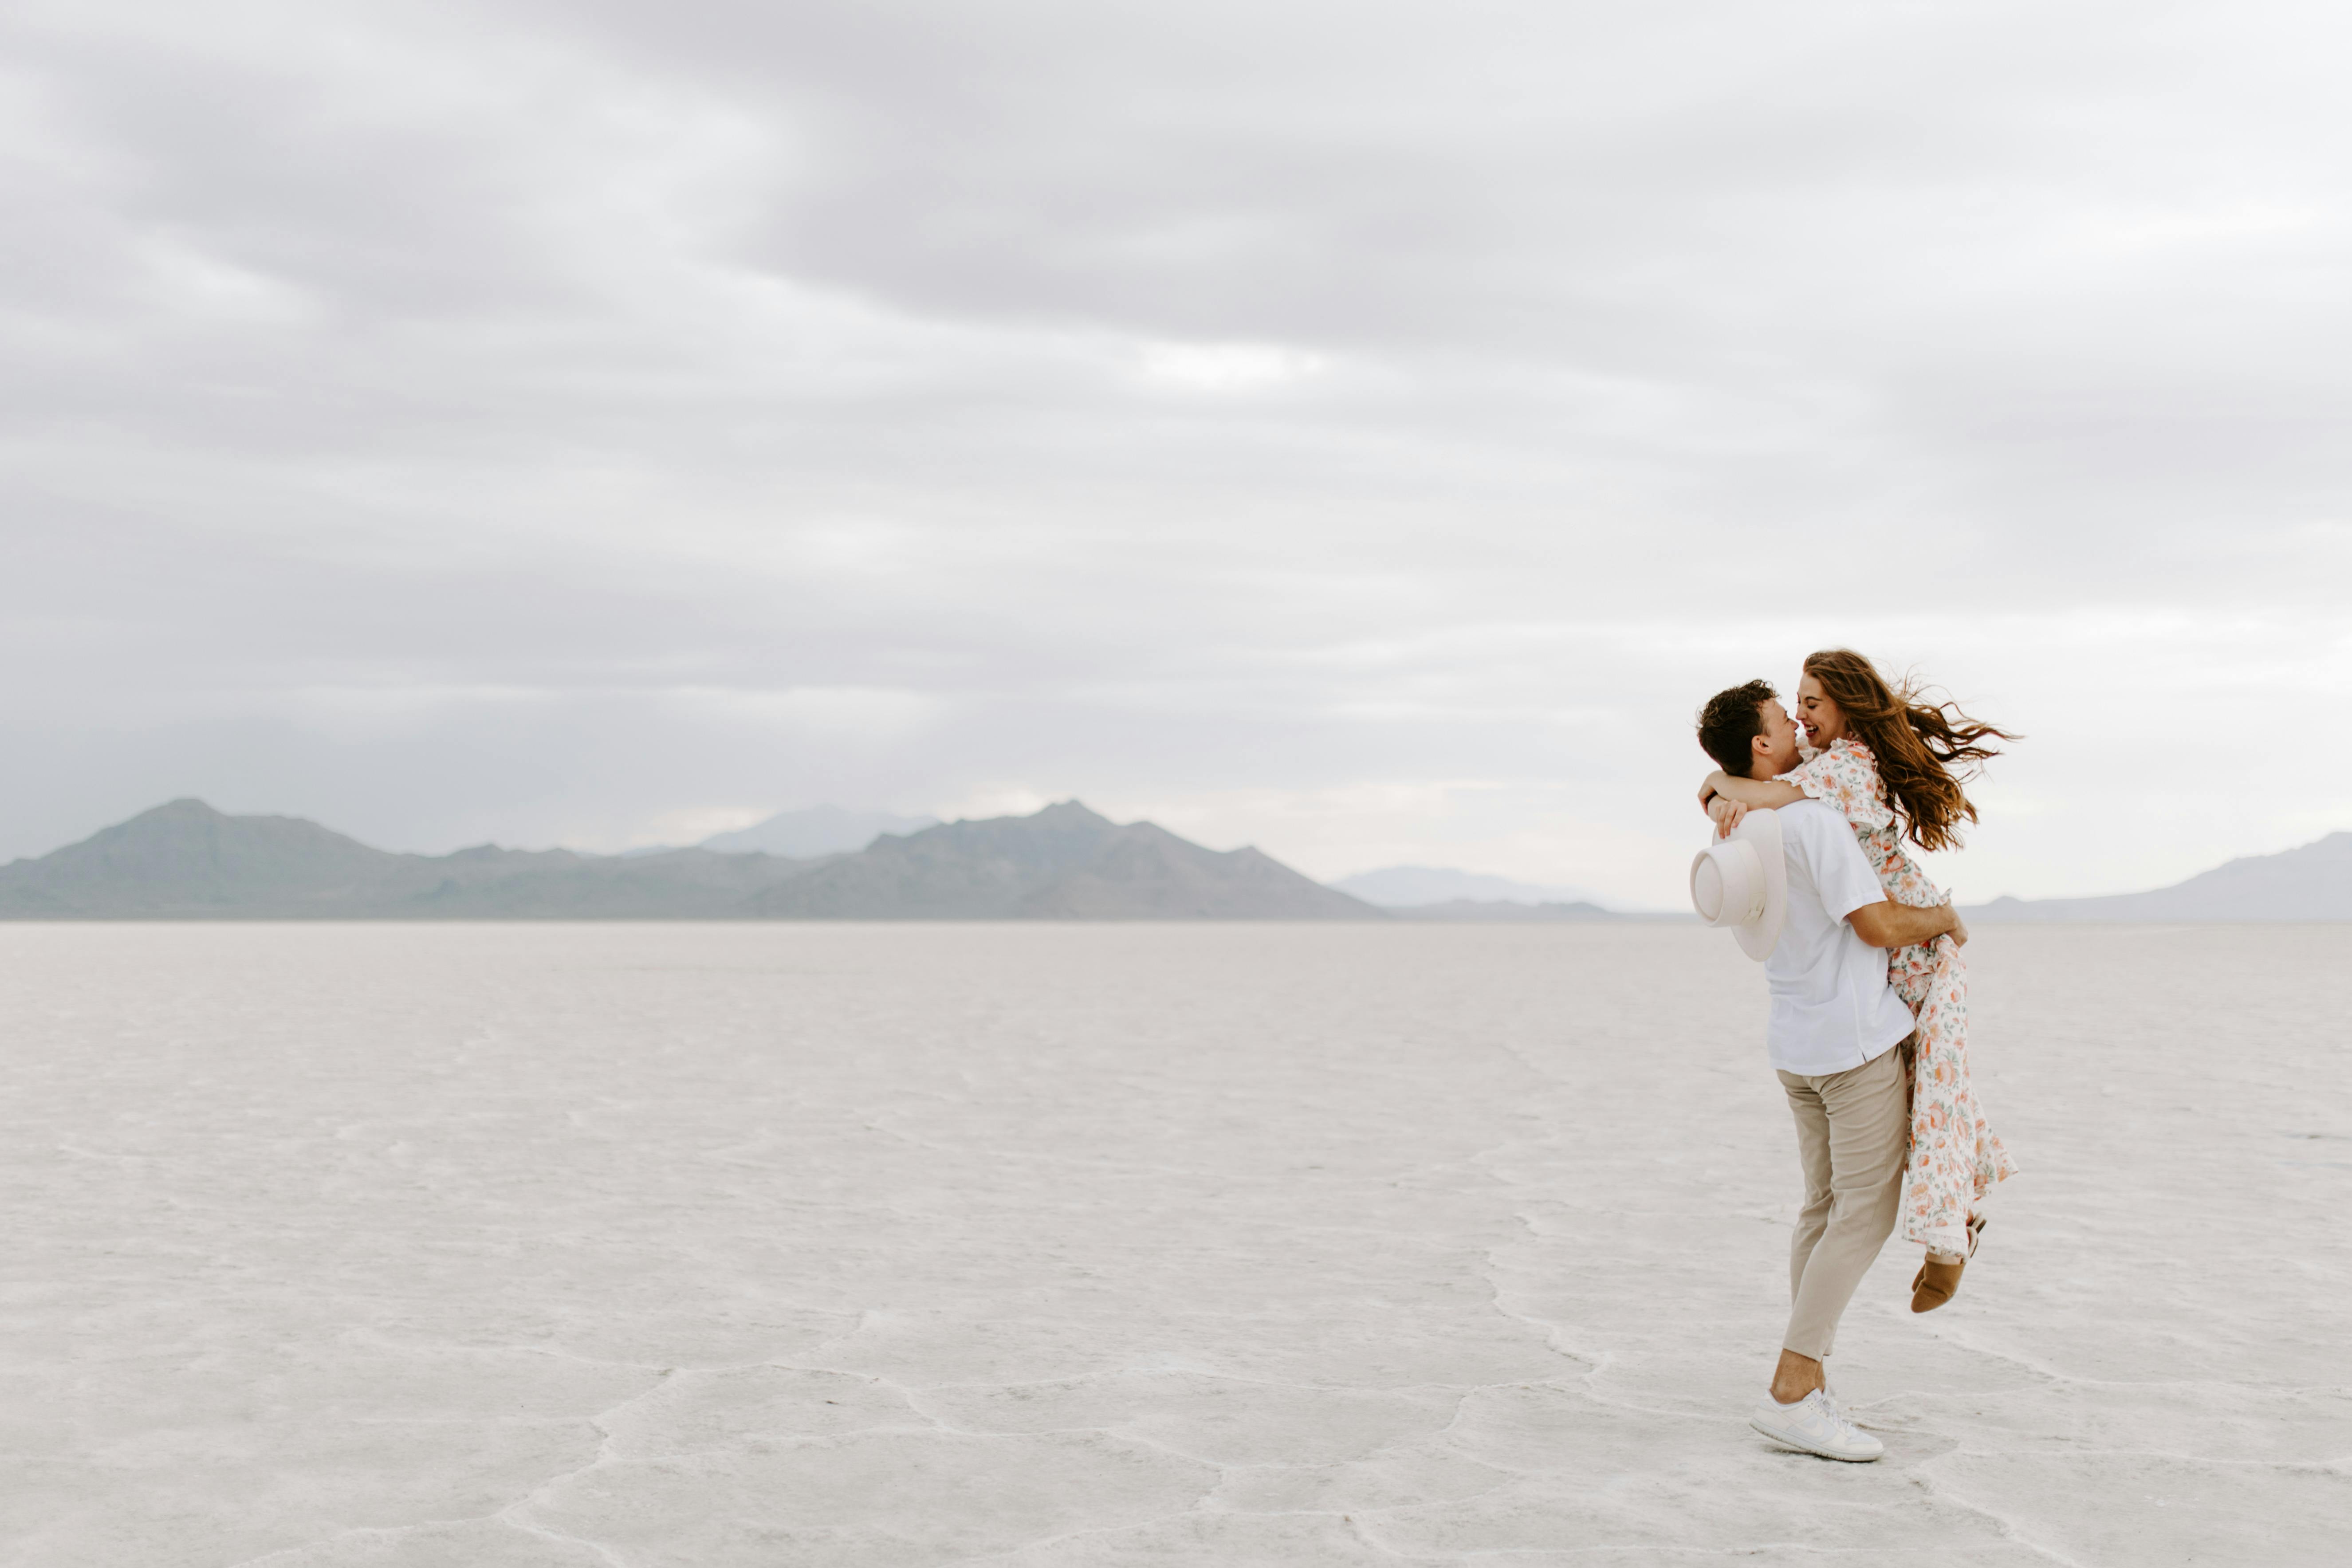 Un couple s'embrassant dans un désert de sable blanc | Source : Pexels